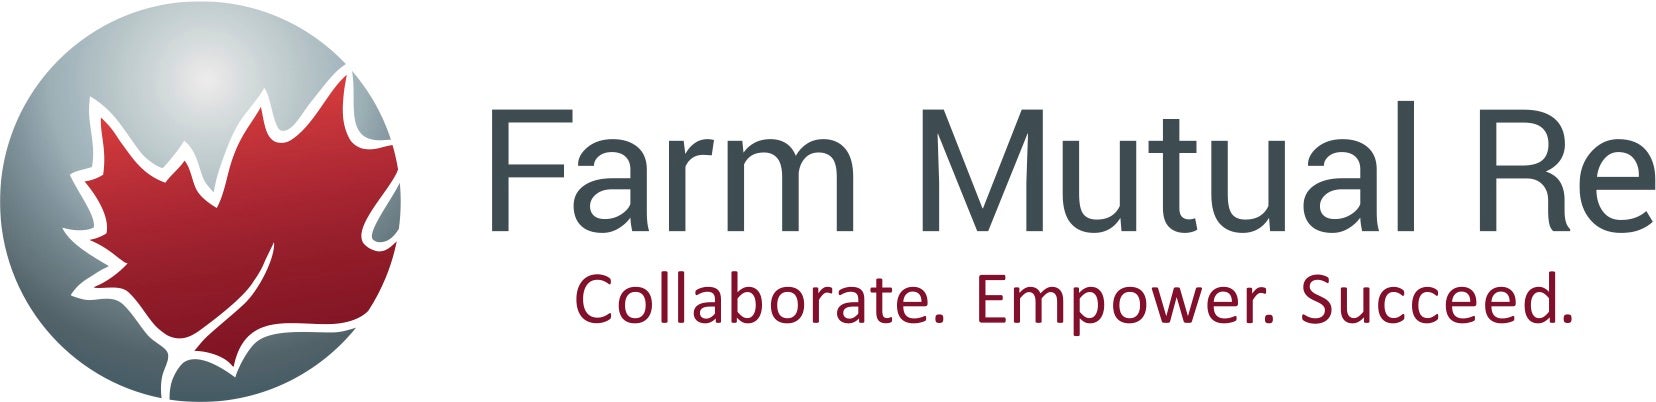 Farm mutual Re logo